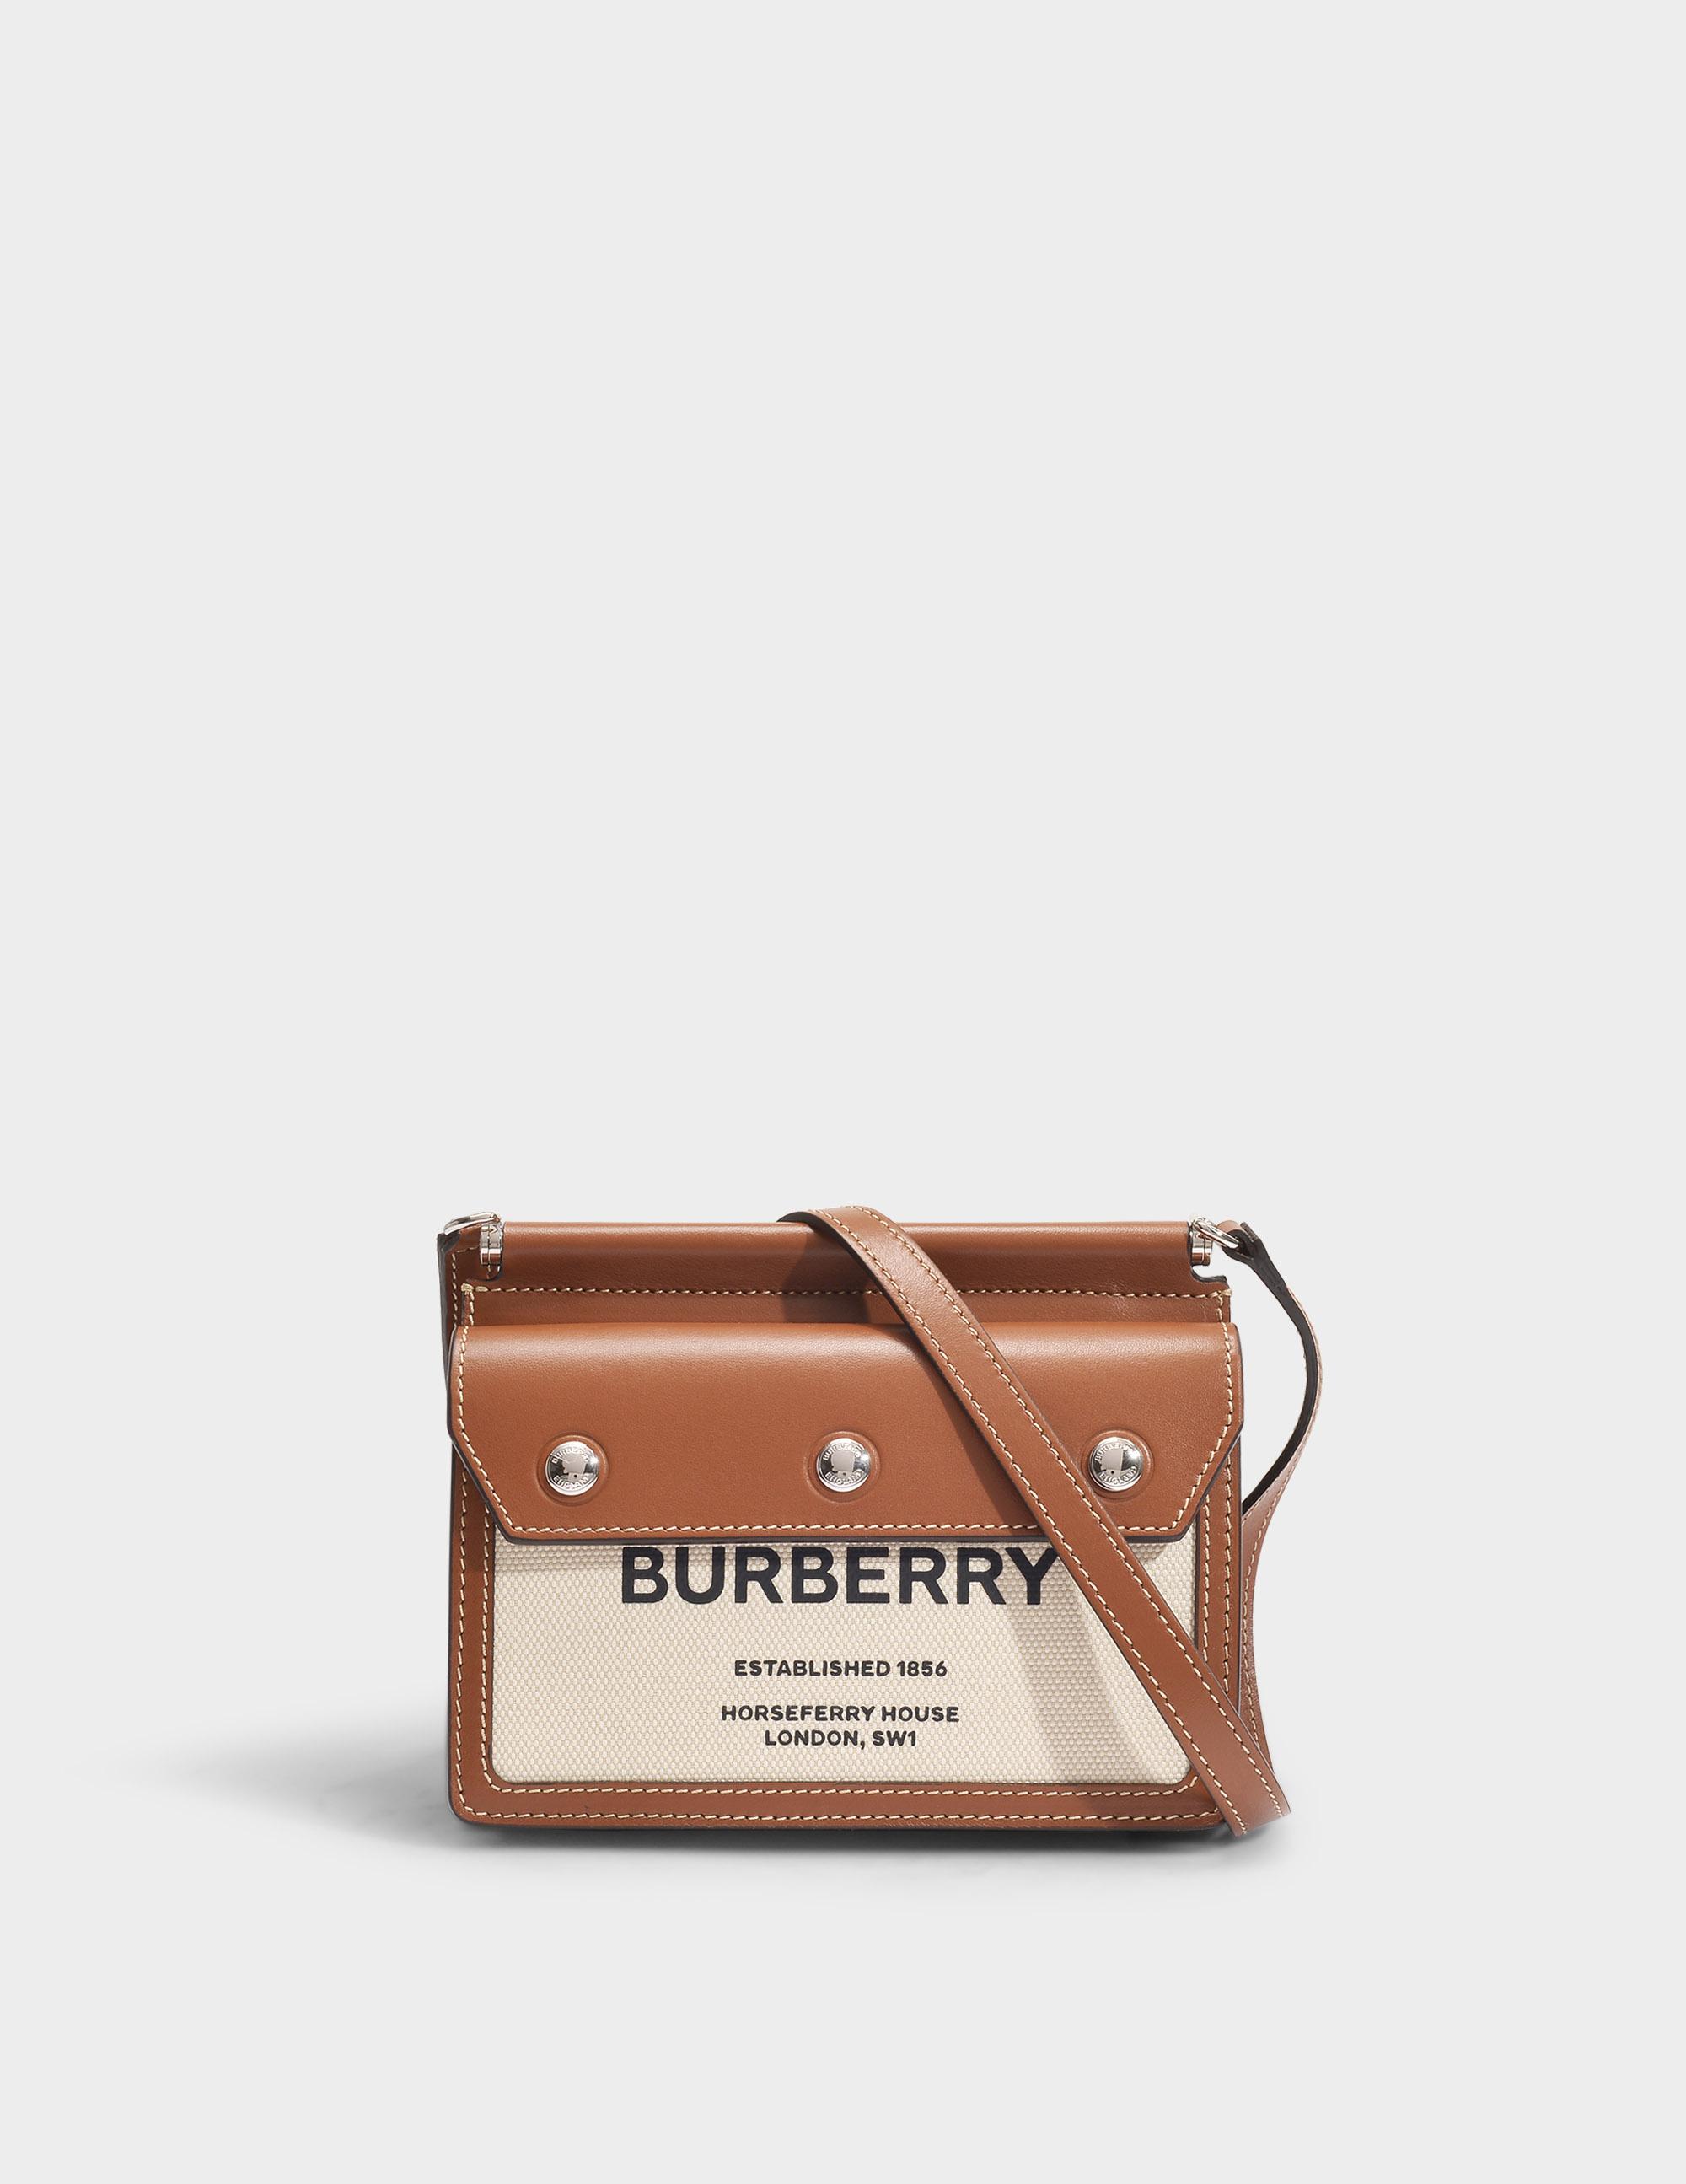 Burberry,Burberry,Burberry  Burberry bag, Burberry purse